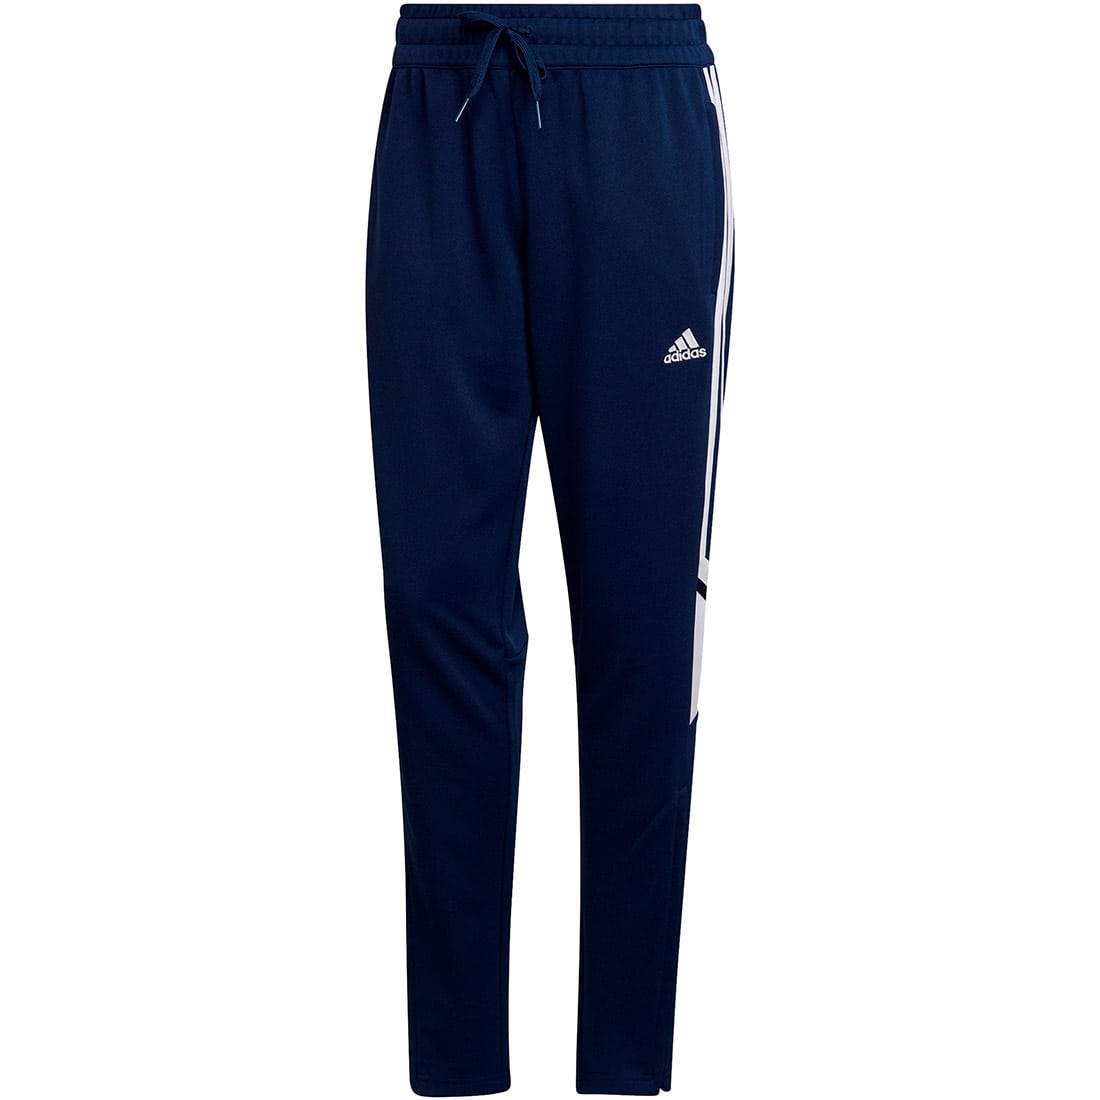 Adidas Damen Trainingshose Condivo 22 blau-weiß online kaufen